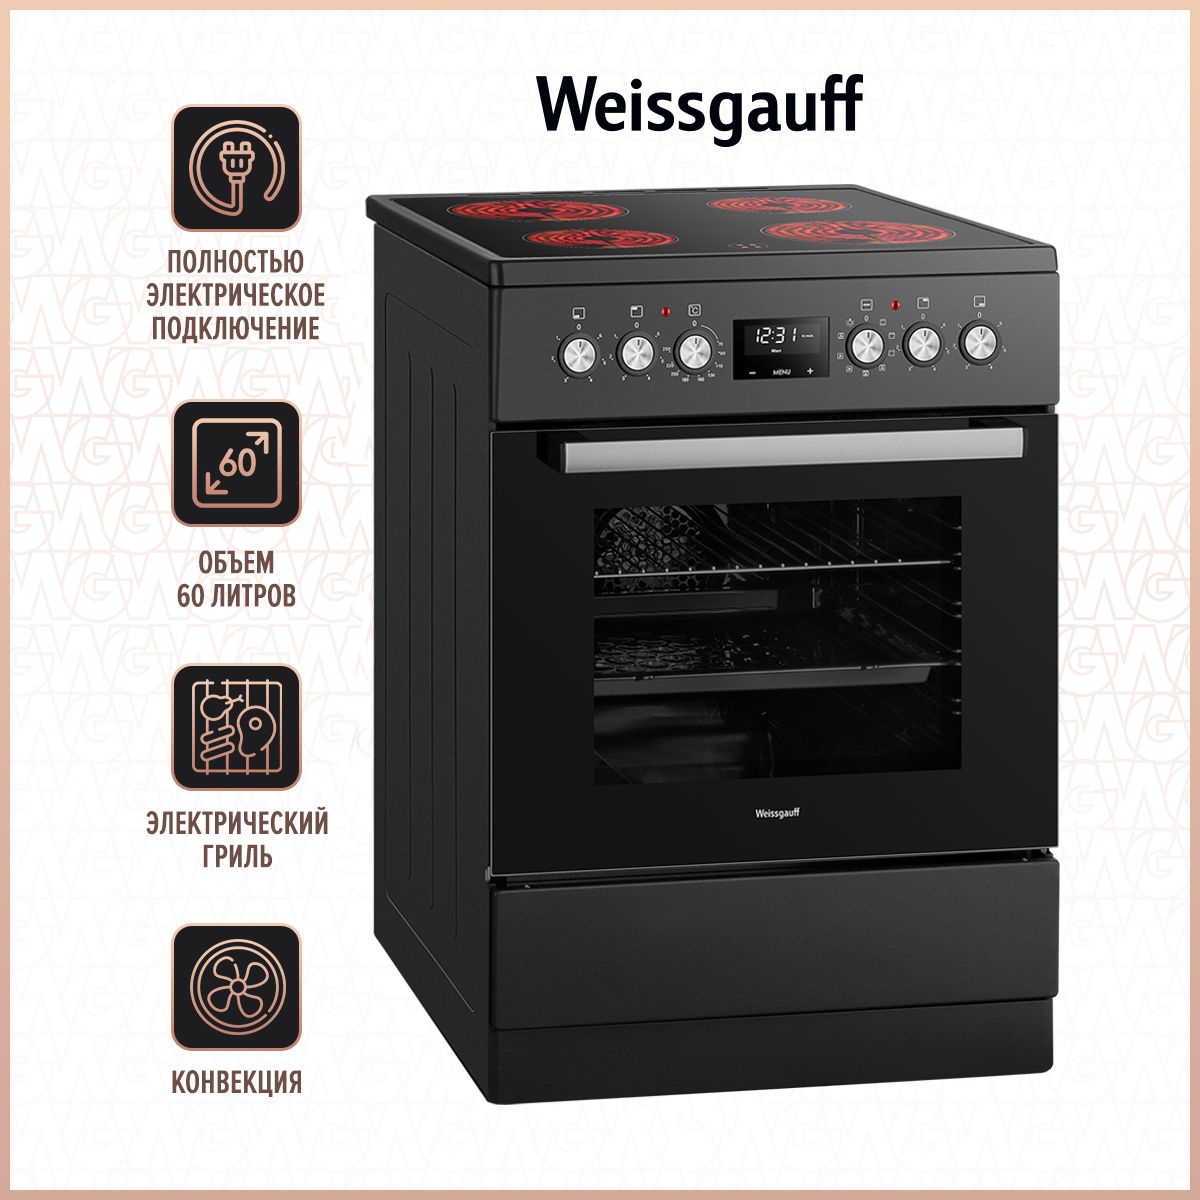 Электрическая плита Weissgauff WES E12V15 черный электрическая плита weissgauff wes e12v15 se серебристый